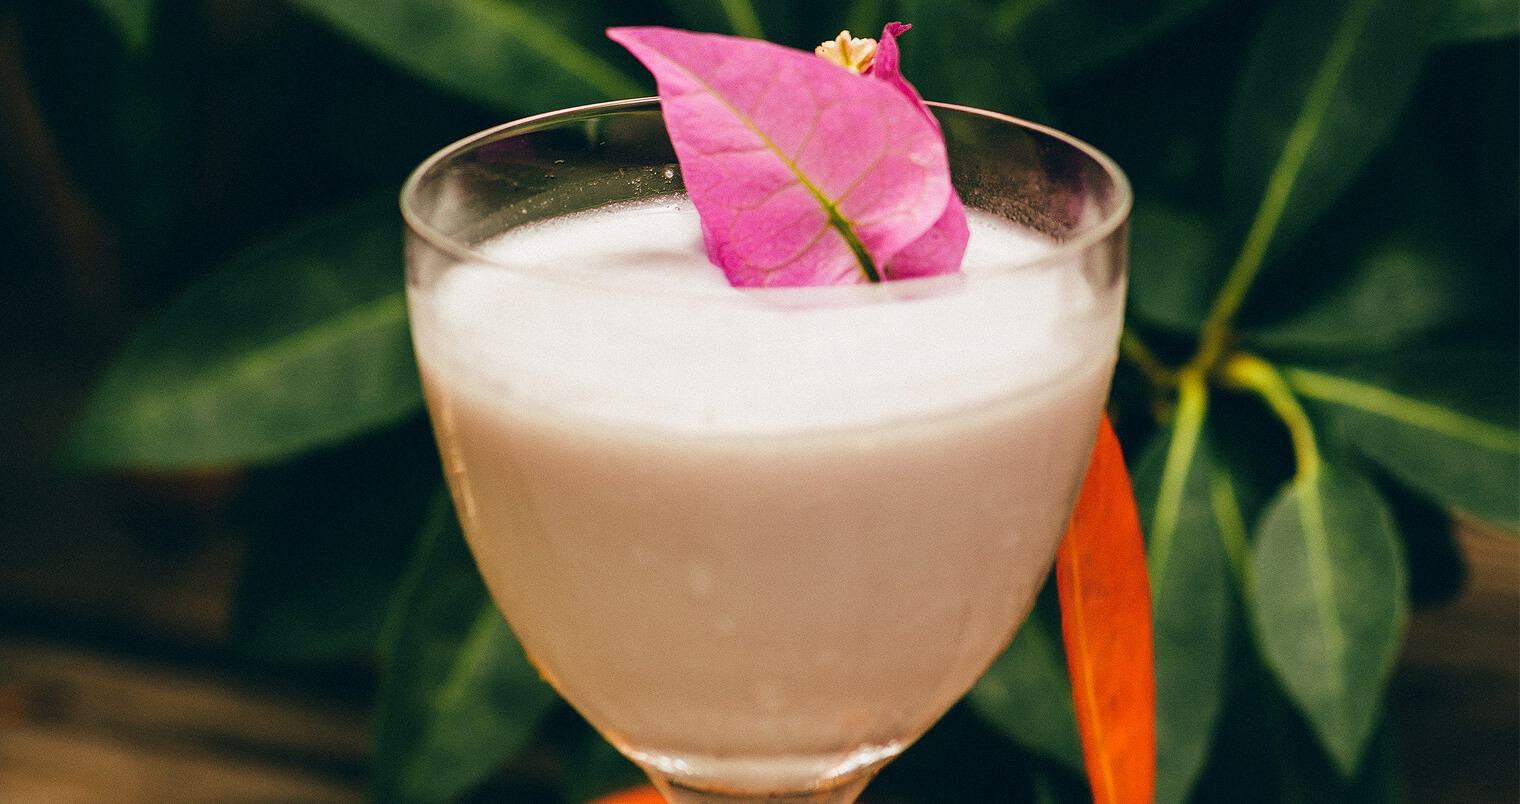 Purple Rain, cocktail with garnish, garden background, featured image